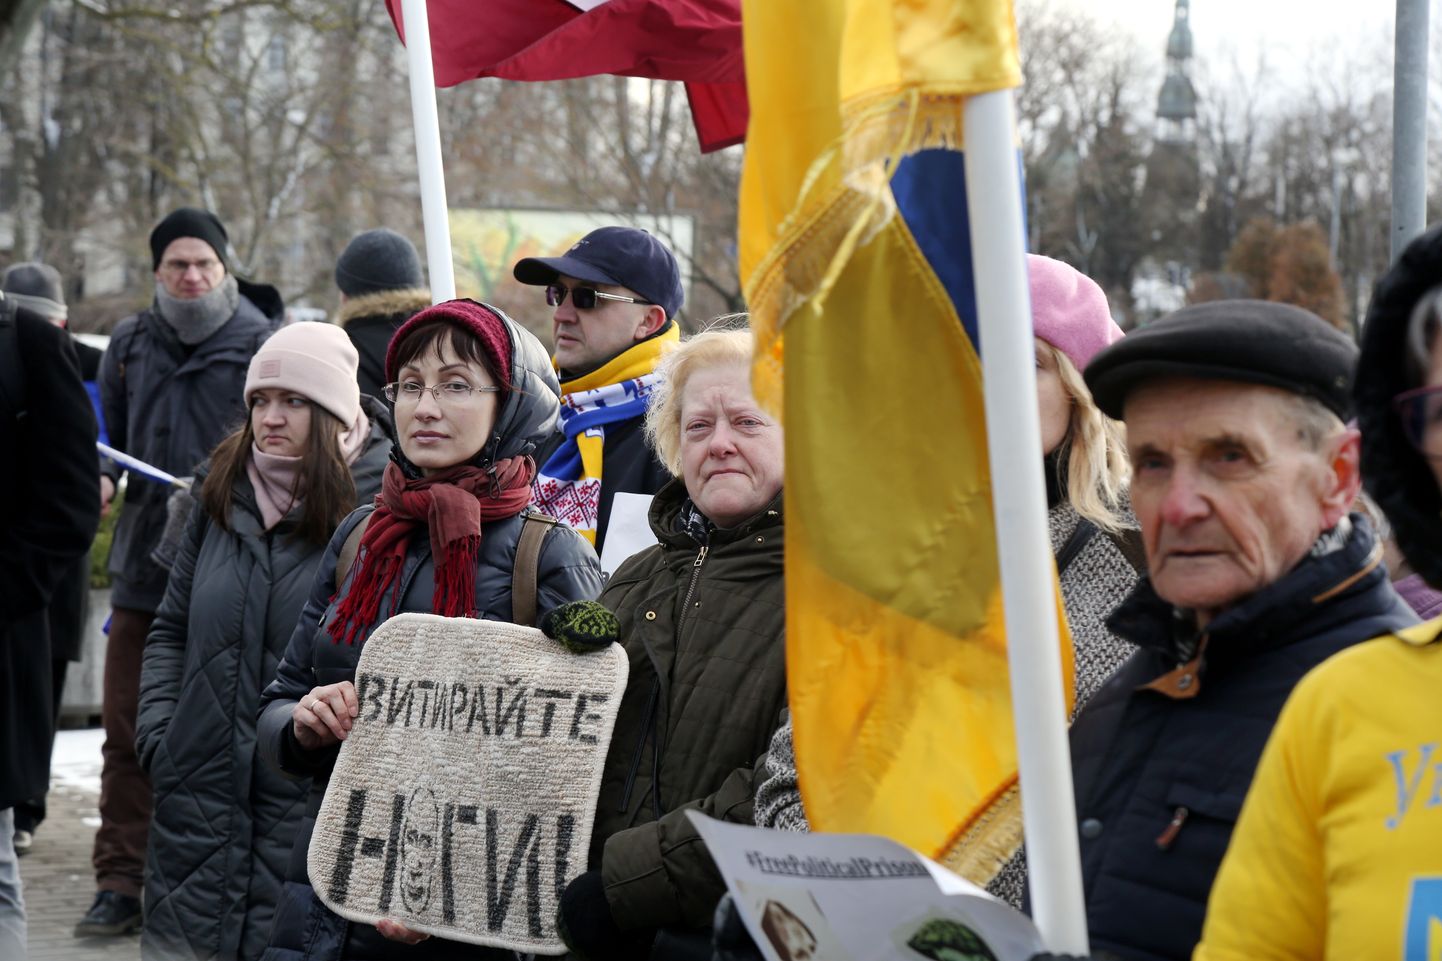 Rakstnieku biedrības "Latvijas PEN" kopā ar "Ukrainas PEN" pie Krievijas vēstniecības rīko "tukšo krēslu" akciju, lai atgādinātu par 64 ukraiņu politieslodzītajiem Krievijā.